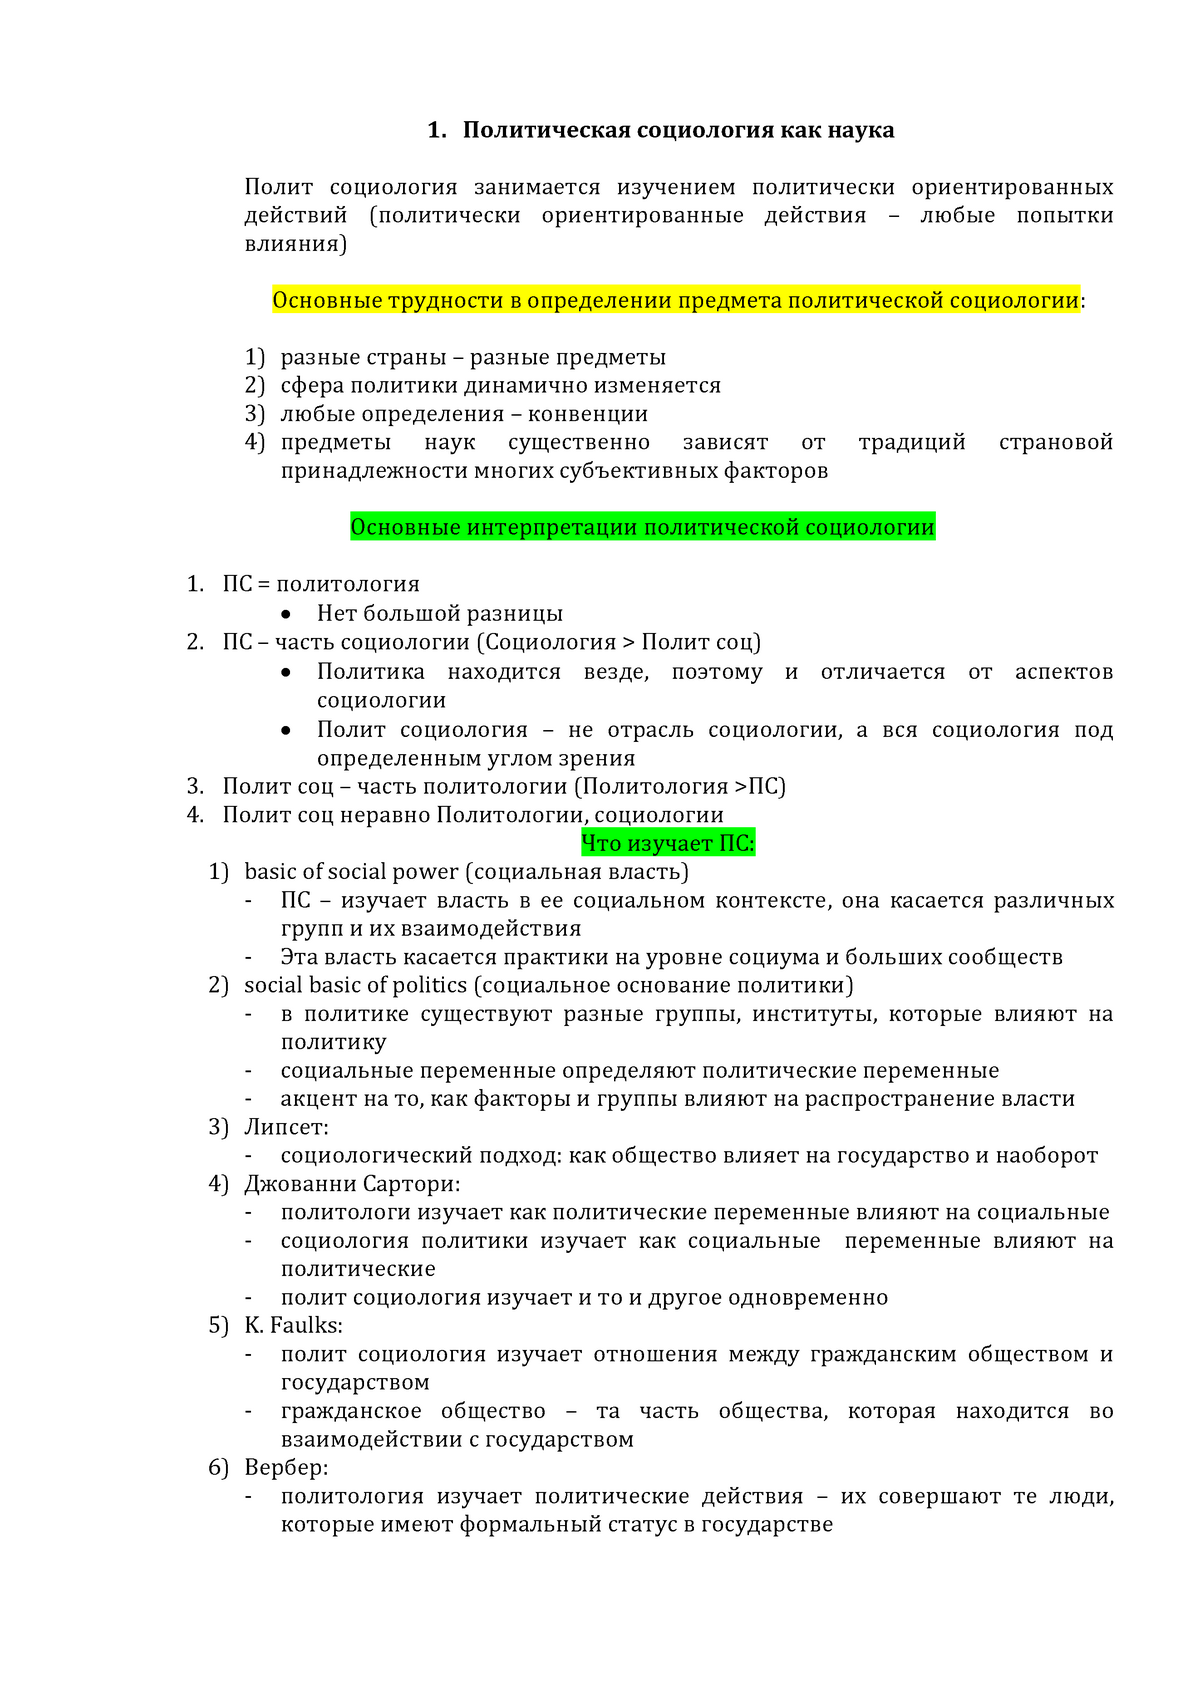 Курсовая работа по теме Актуальные вопросы развития российской социологии на современном этапе